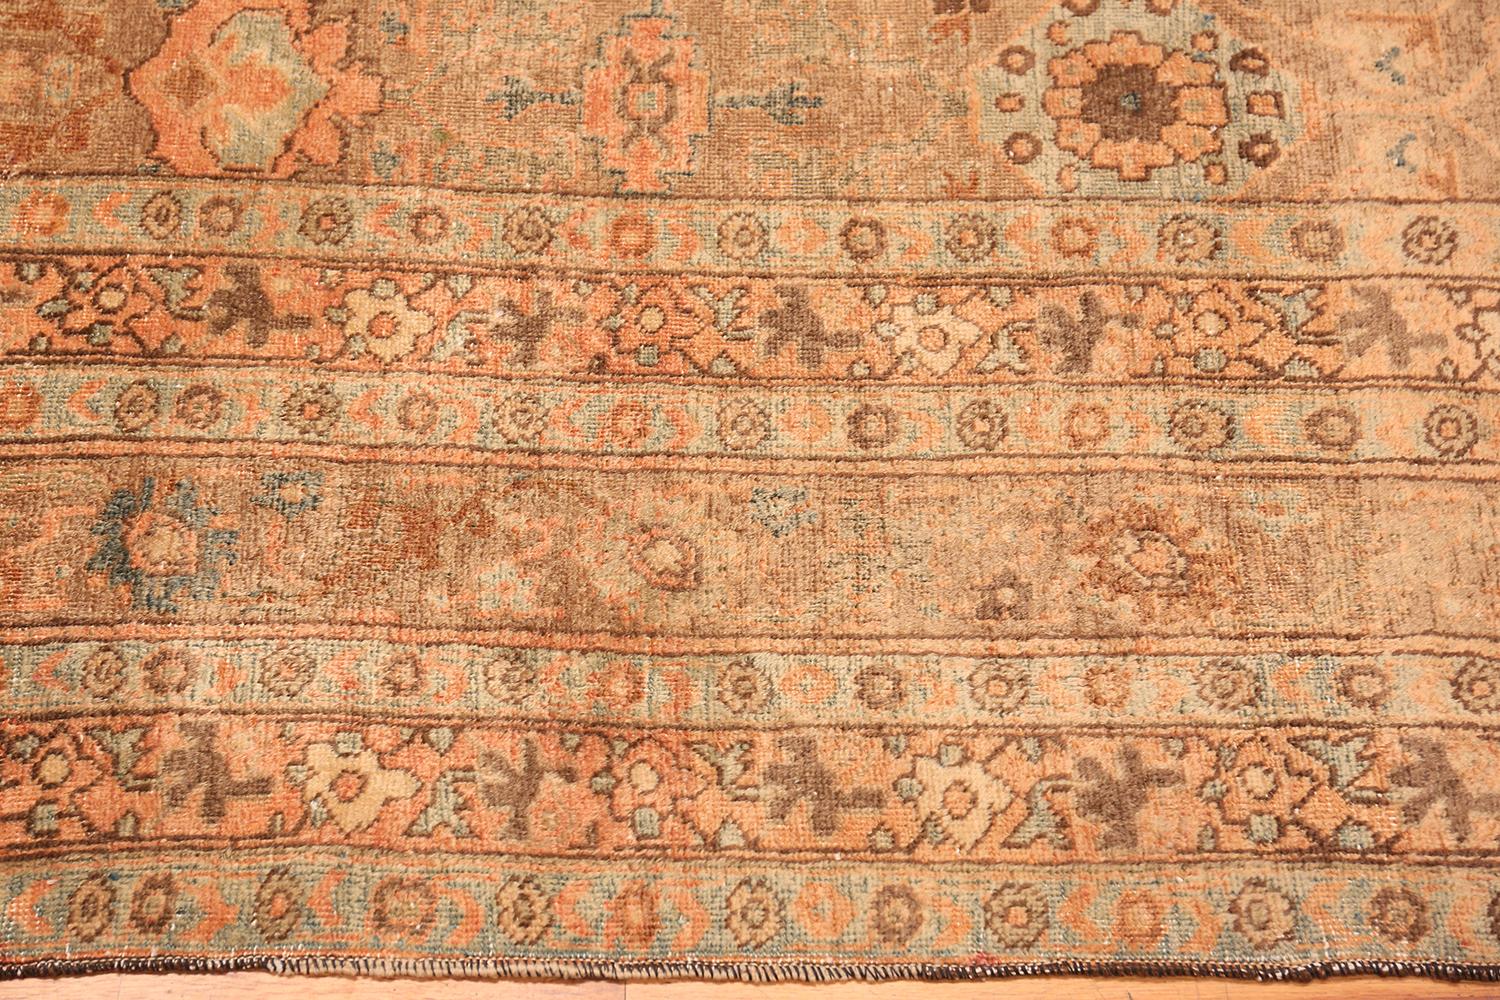 Magnifique grand tapis persan Tabriz, pays d'origine / type de tapis : Tapis persan, date : circa 1920. Dimensions : 3,43 m x 4,98 m (11 ft 3 in x 16 ft 4 in). Tabriz est une ville traditionnelle de tissage de tapis, connue pour la diversité de ses